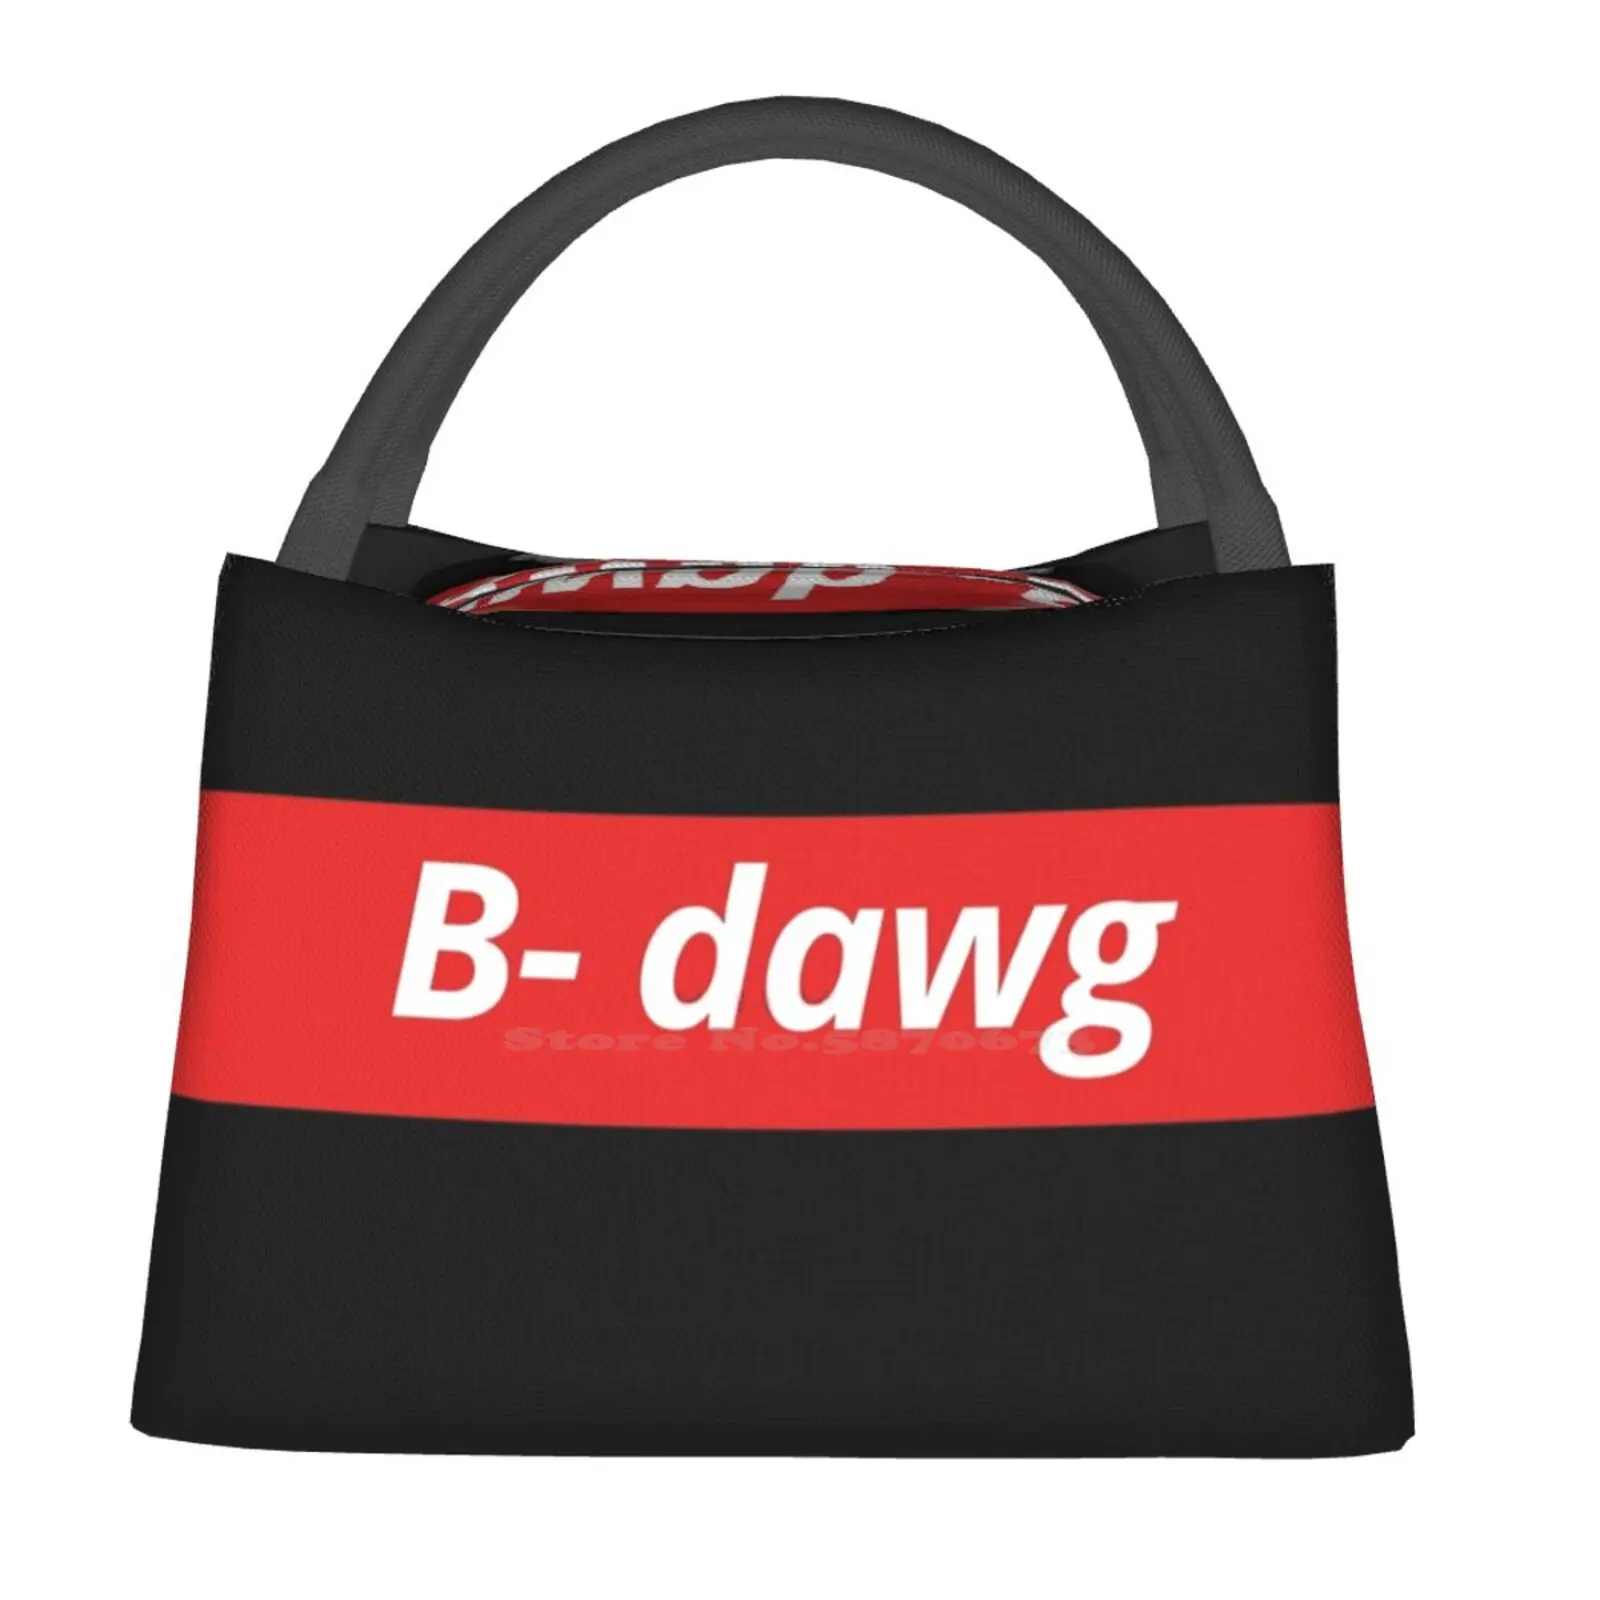 

Термоизолированная сумка-холодильник B-Dawg, подарок на заказ, супер плохой, низкий уровень жизни, красный логотип нравственного человека